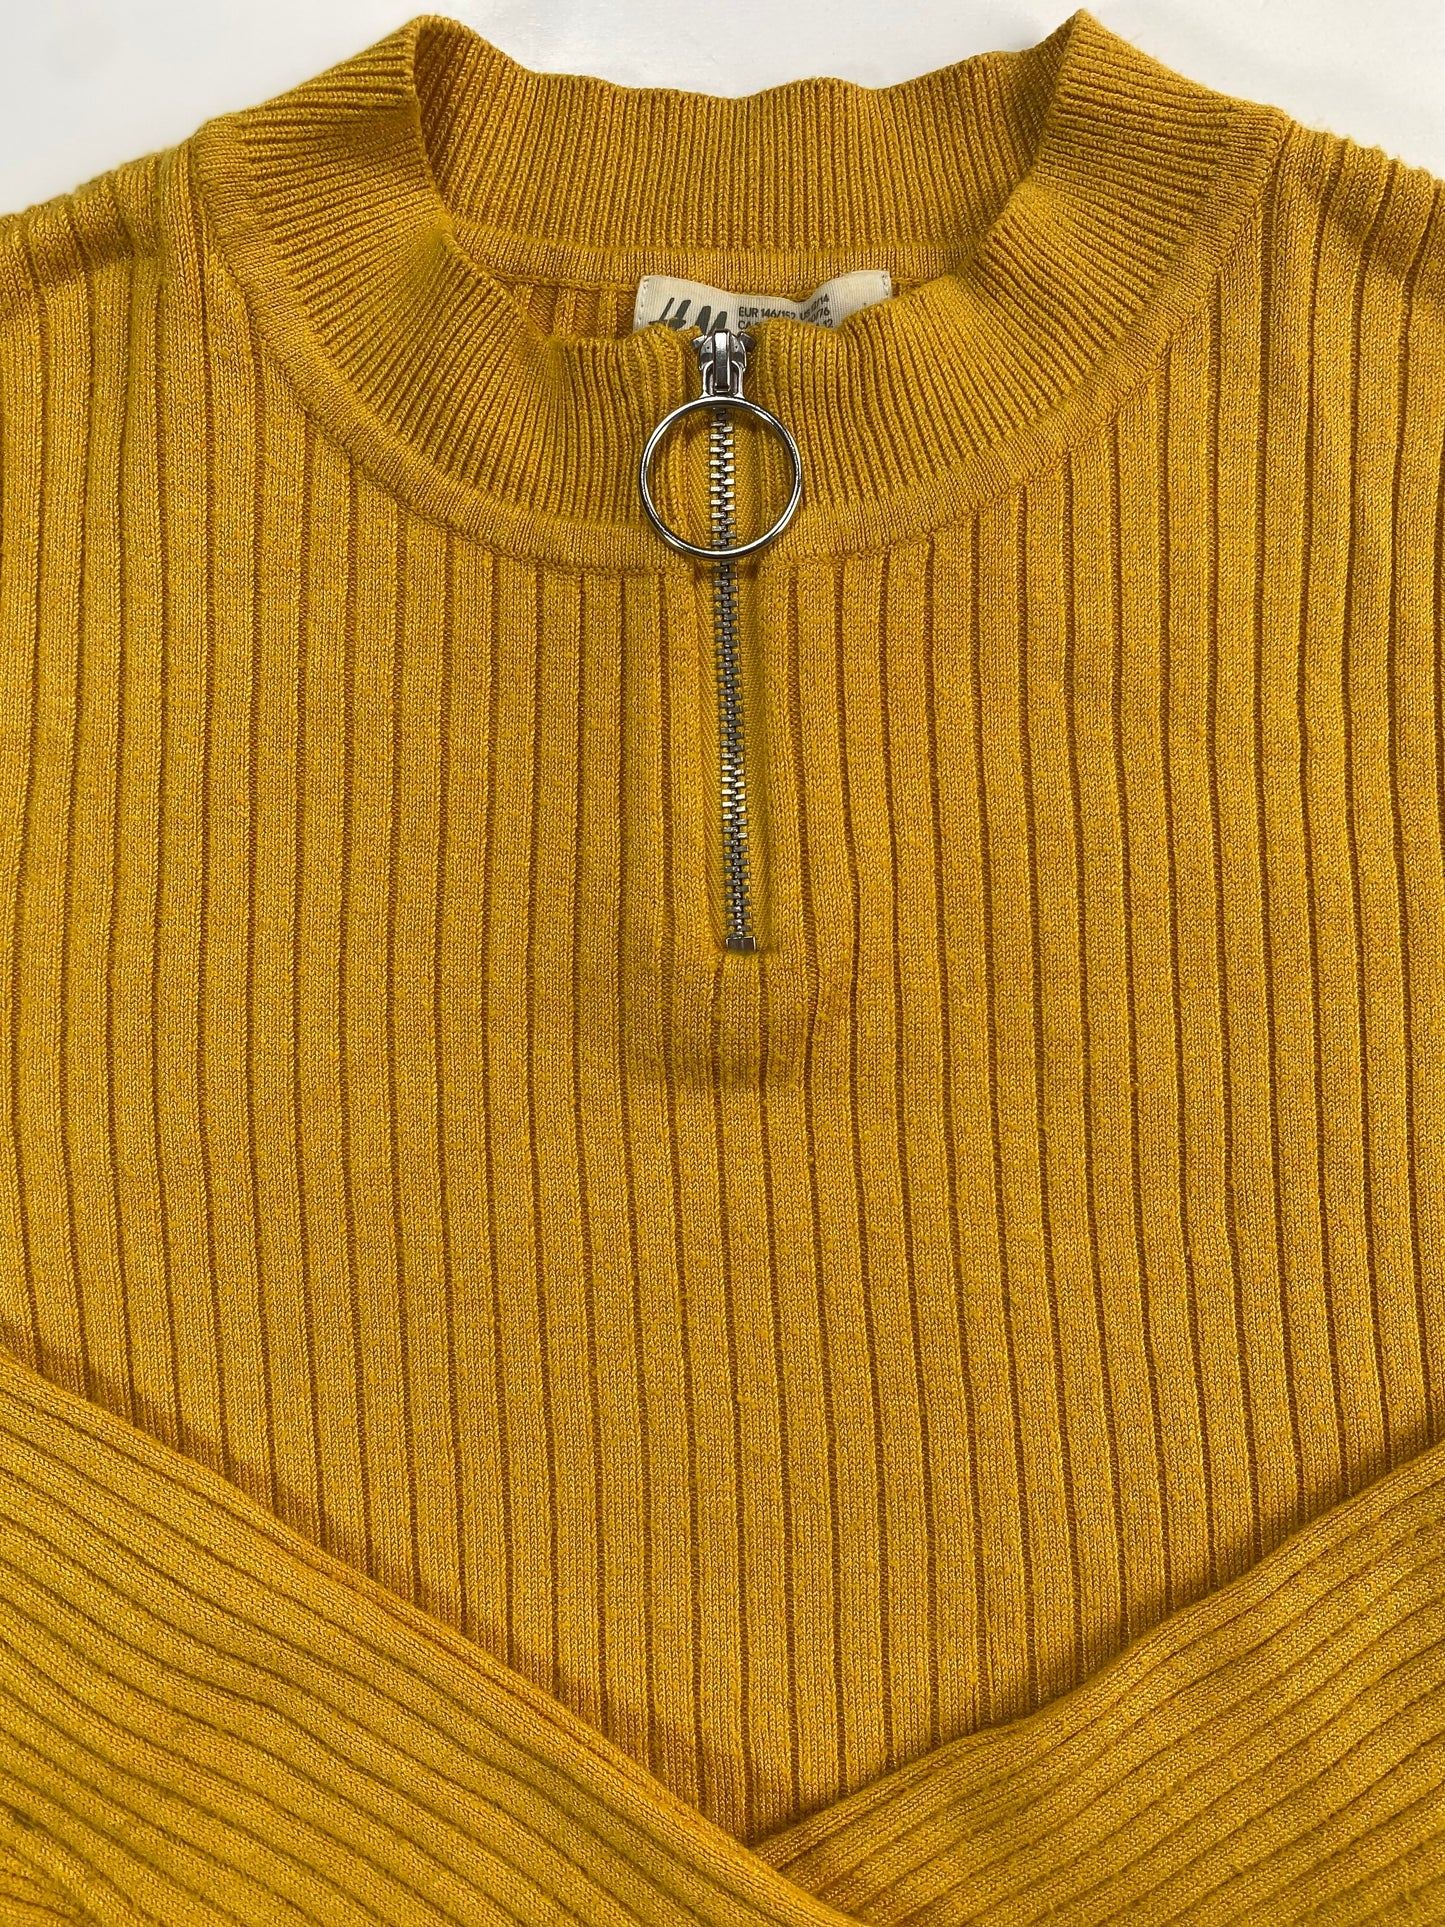 H&M zip sweater/ 10-12Y